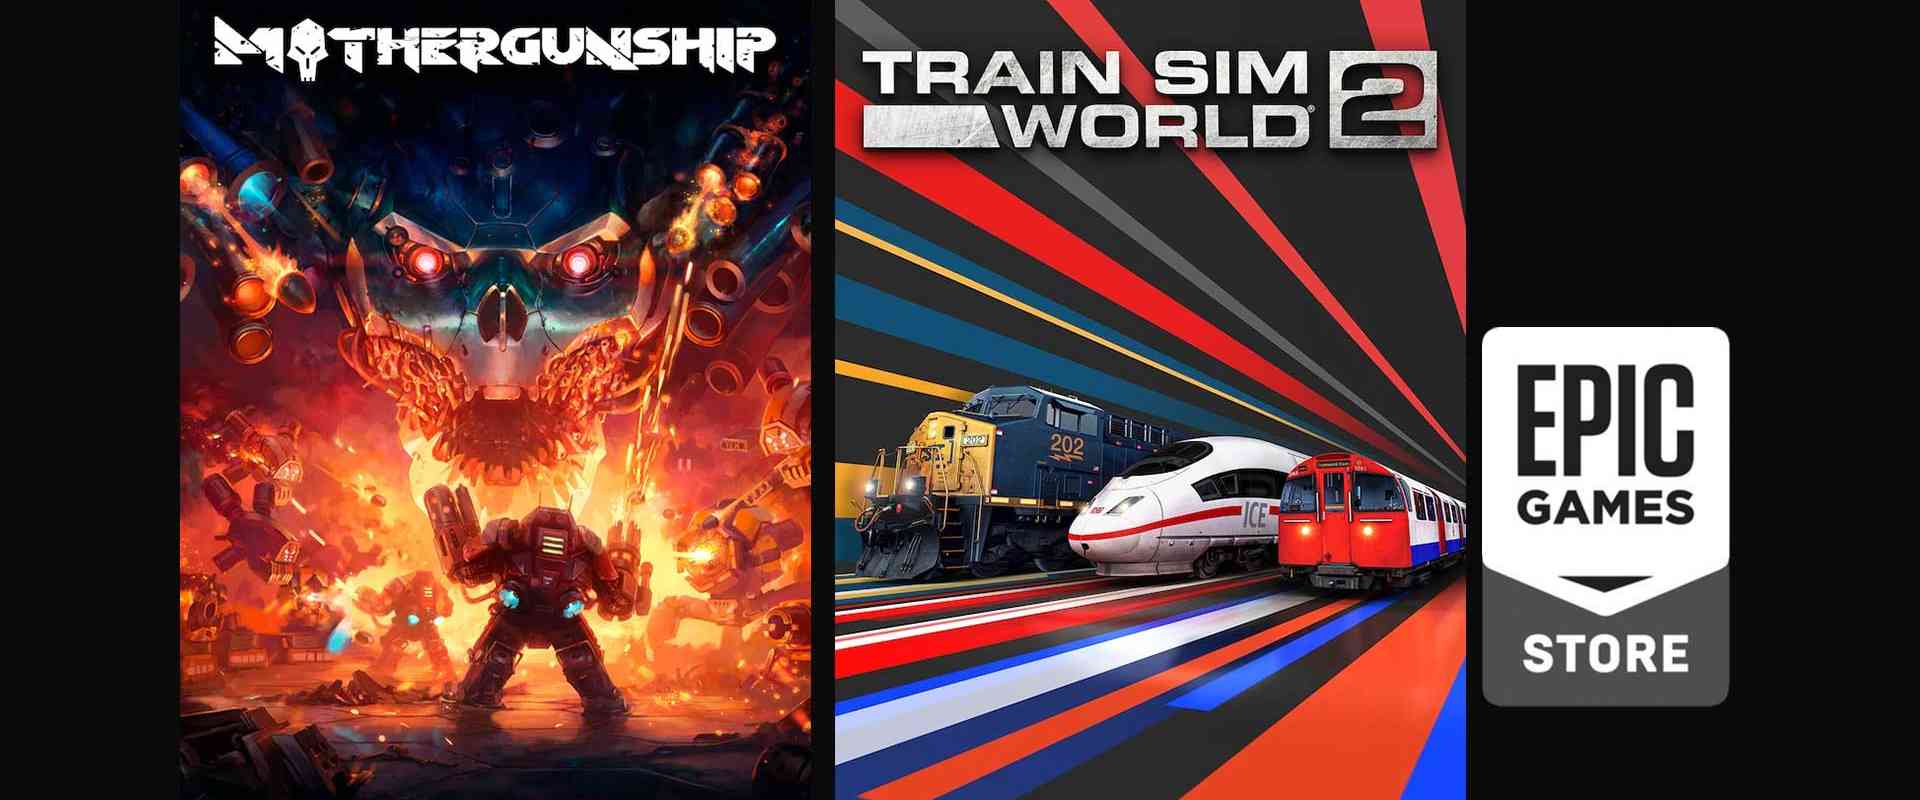 epic game free game mothergunship train sim world 2